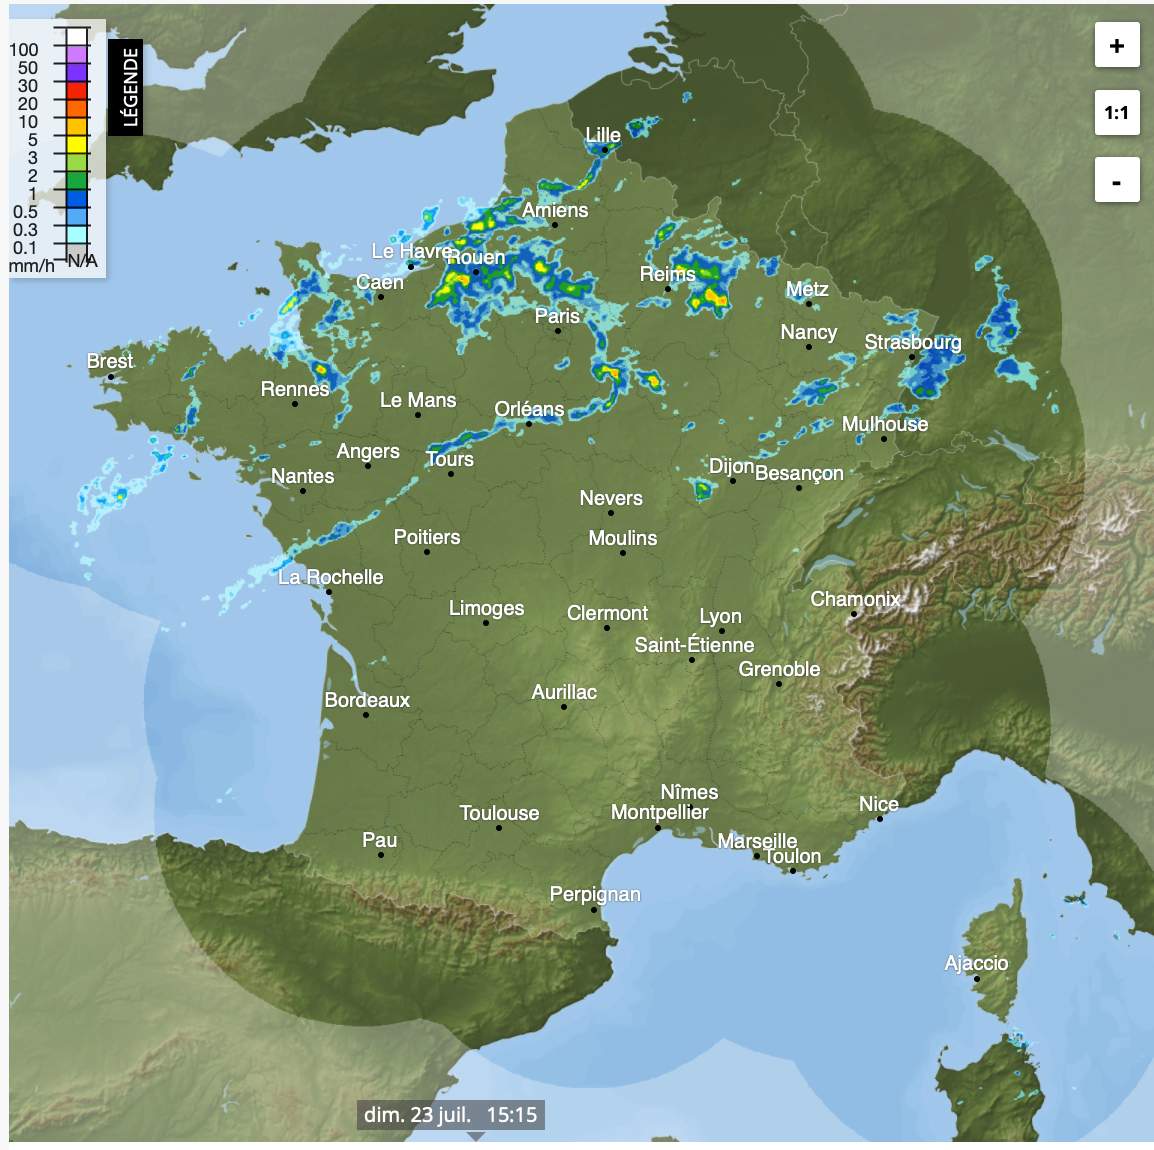 Radar précipitations pour ce dimanche à 16h; Source: METEONEWS